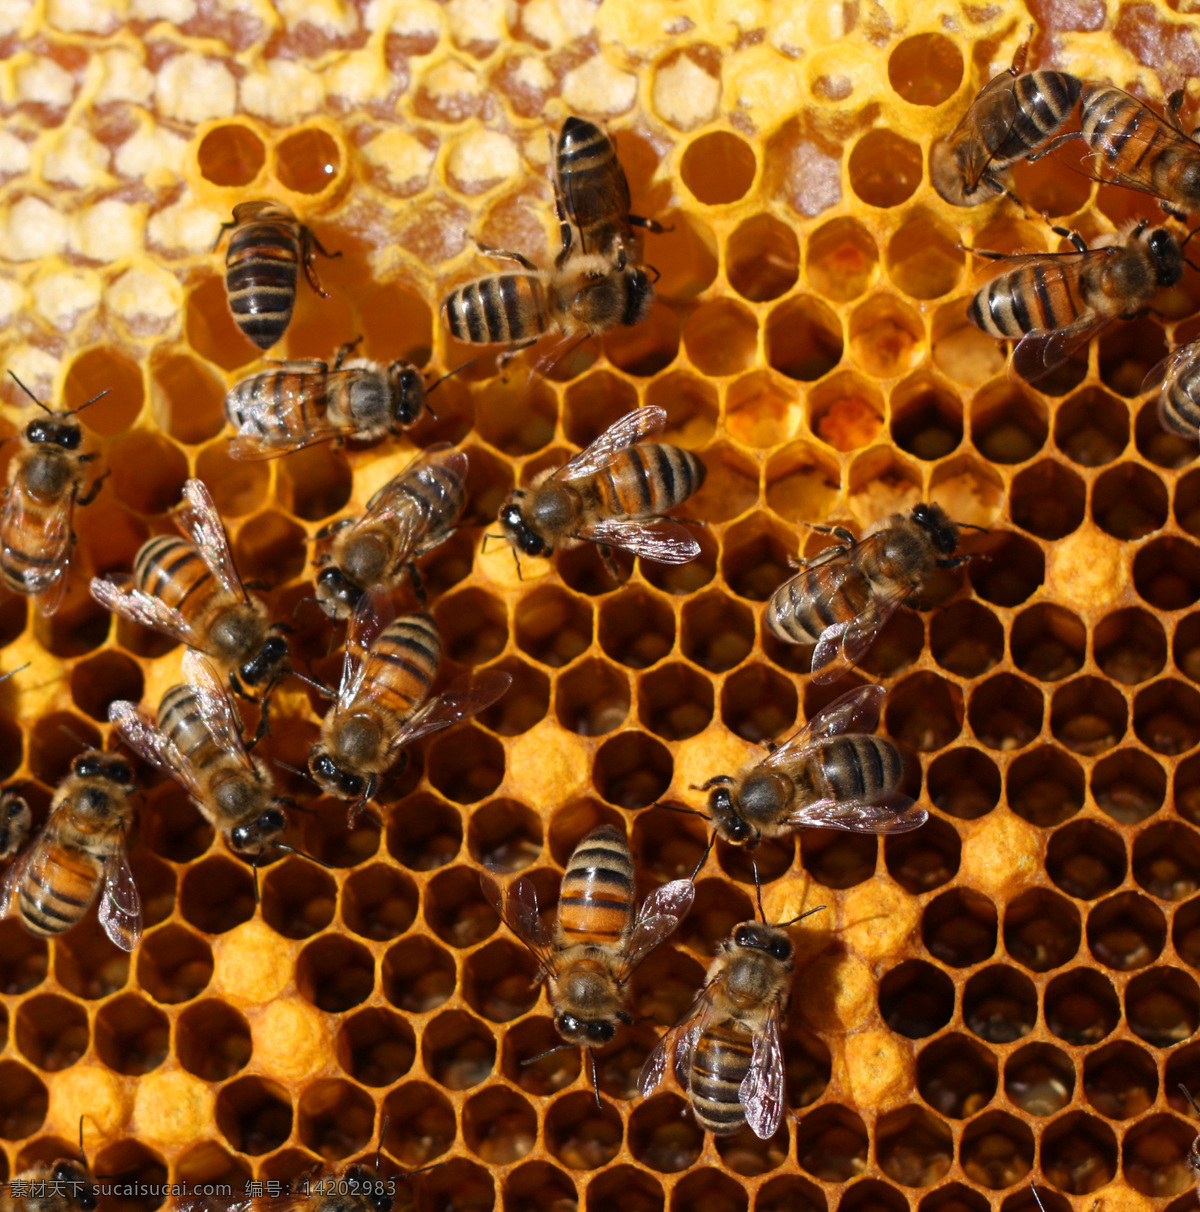 正在 蜂窝 上 忙碌 蜜蜂 蜂蜜 补品 蜂胶 昆虫世界 生物世界